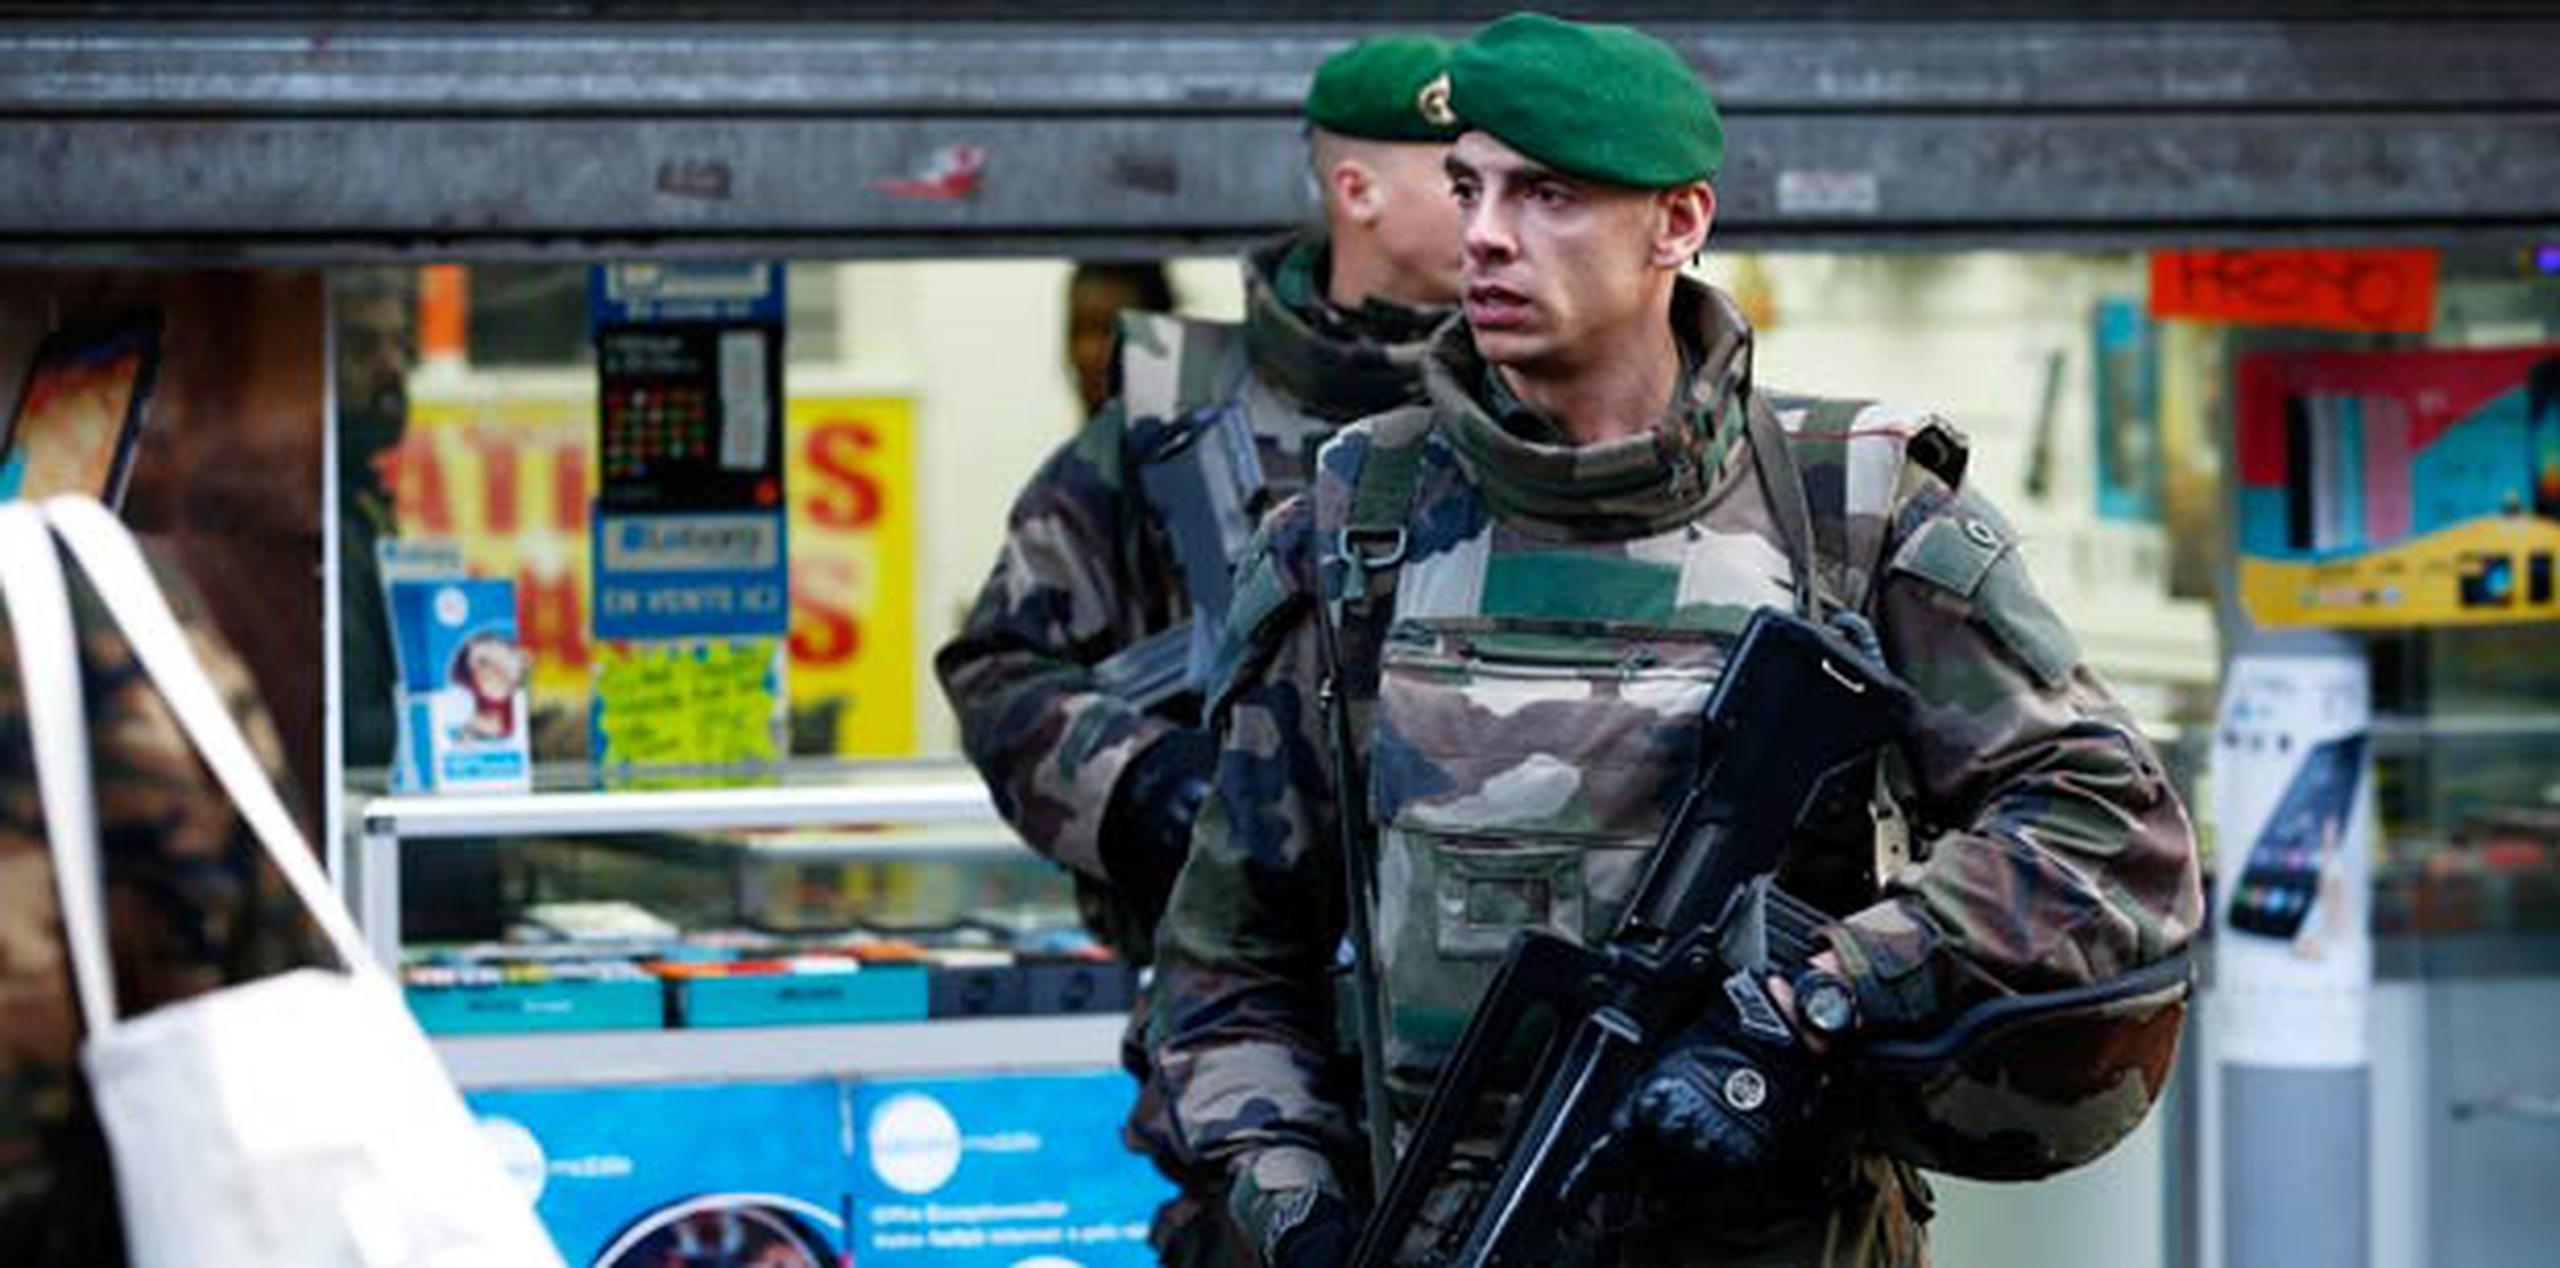 Dos militares patrullan cerca del lugar donde la Policía francesa mató al hombre armado que trató de atacar hoy una comisaría del barrio de la Goutte d'Or, al norte de París. (EFE/Yoan Valat)
